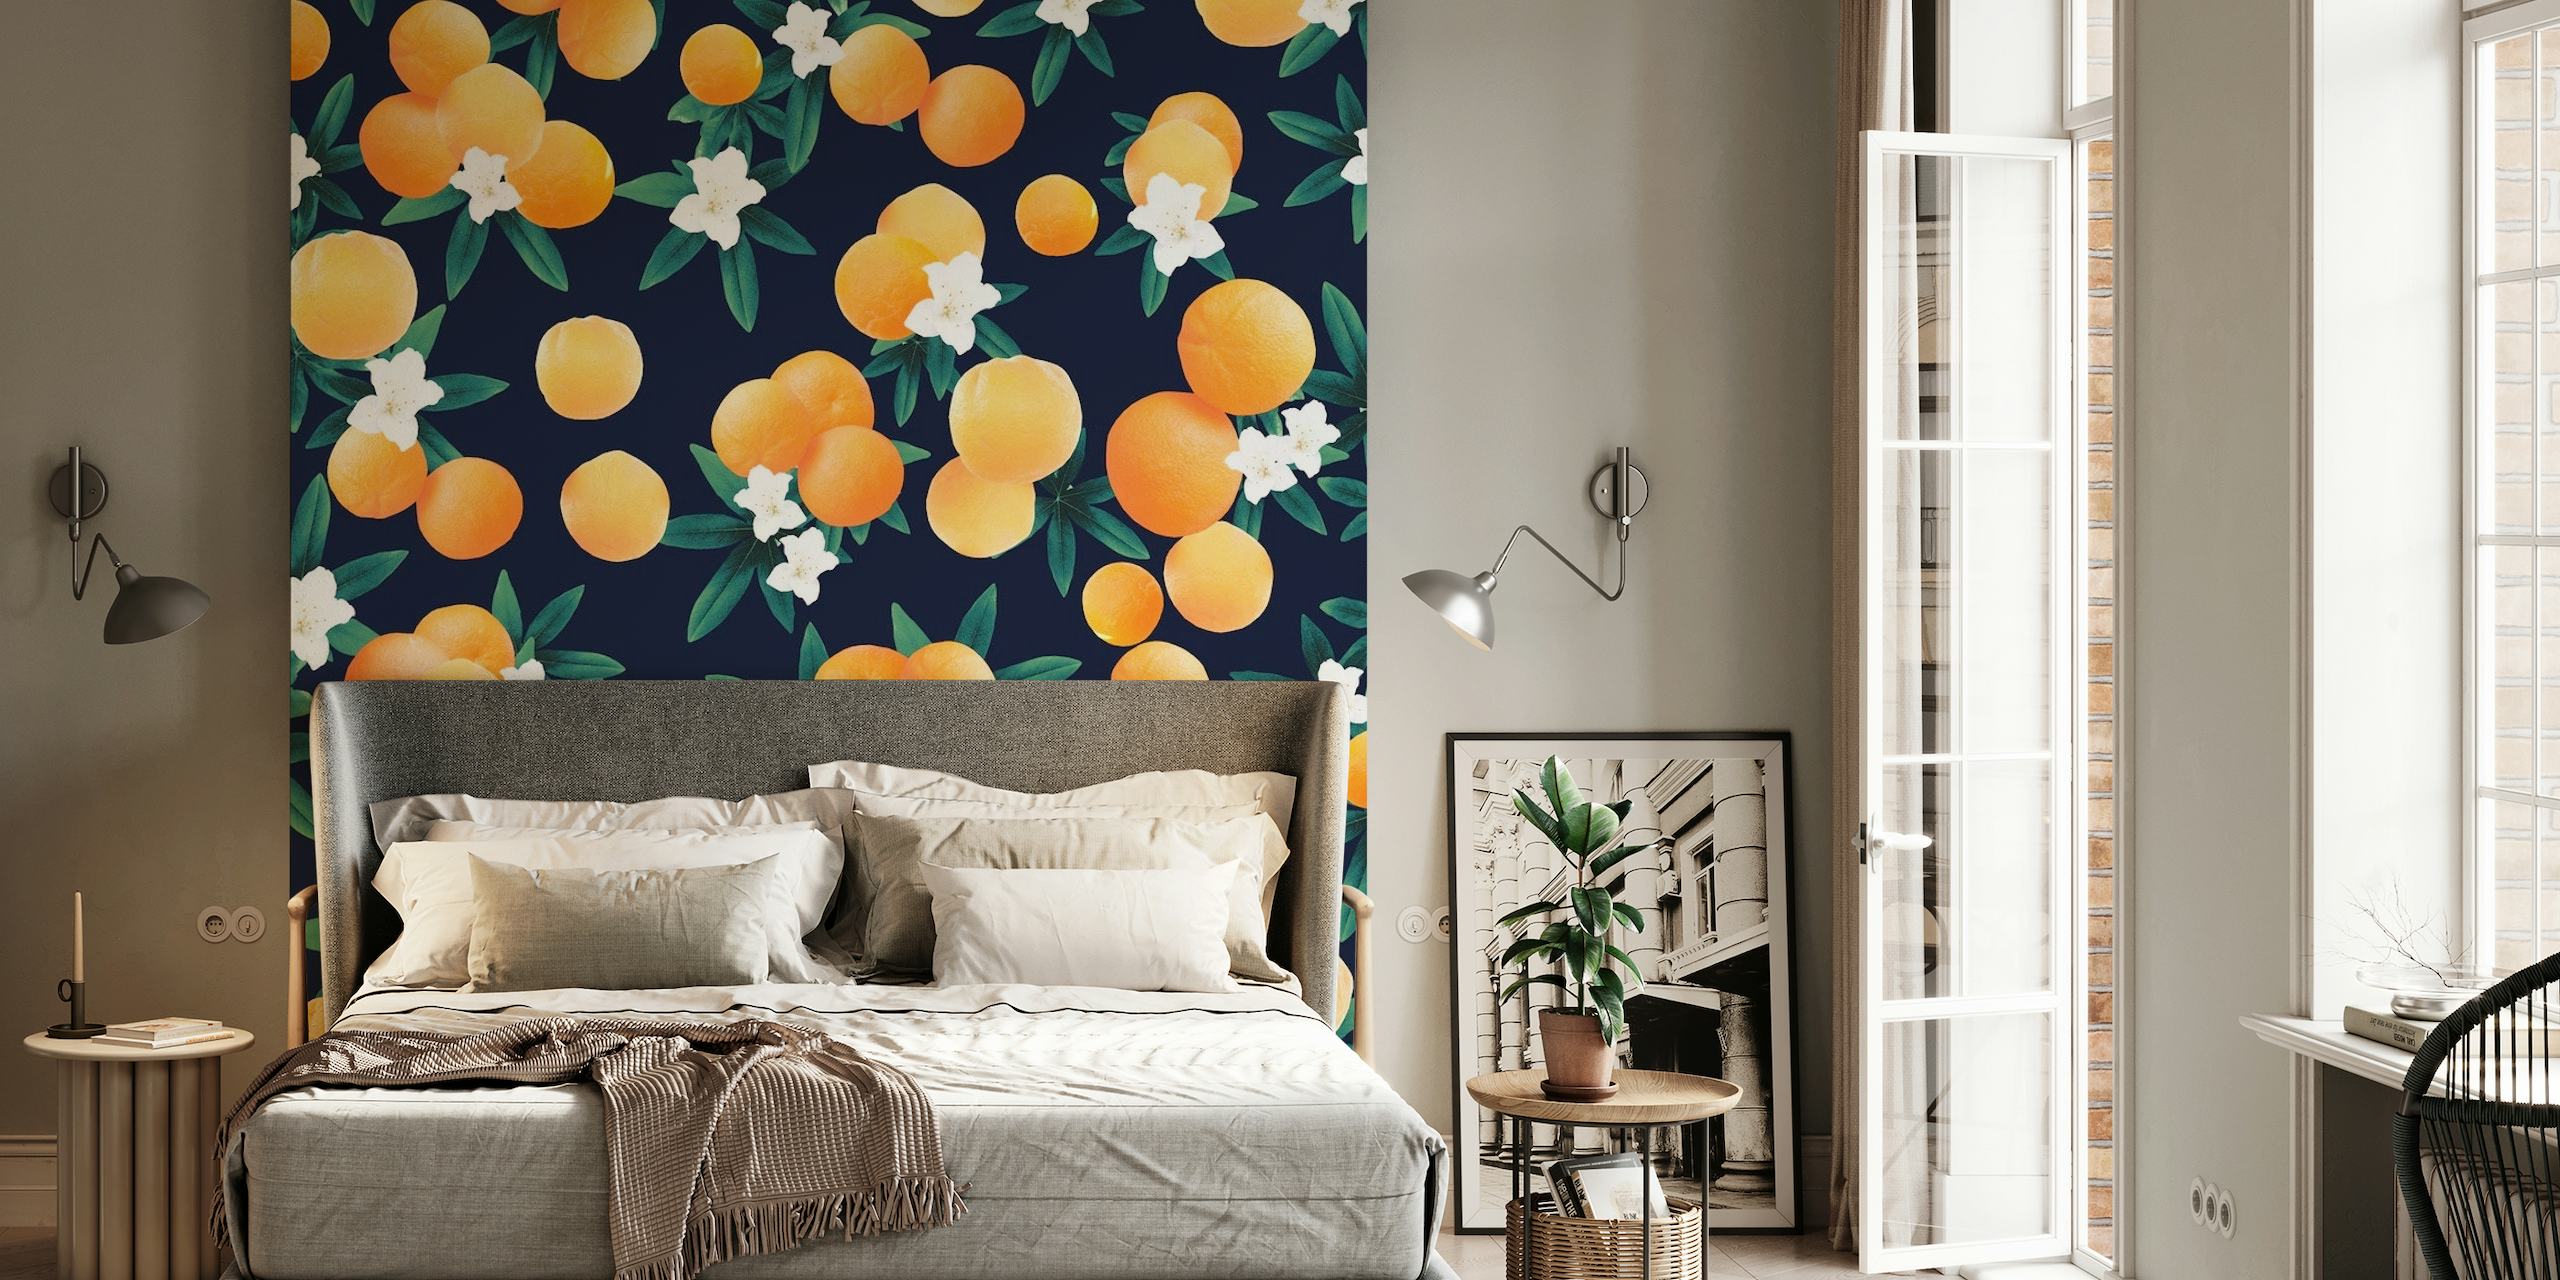 Mural de parede com frutas cítricas laranja brilhante e flores brancas contra um fundo azul escuro.